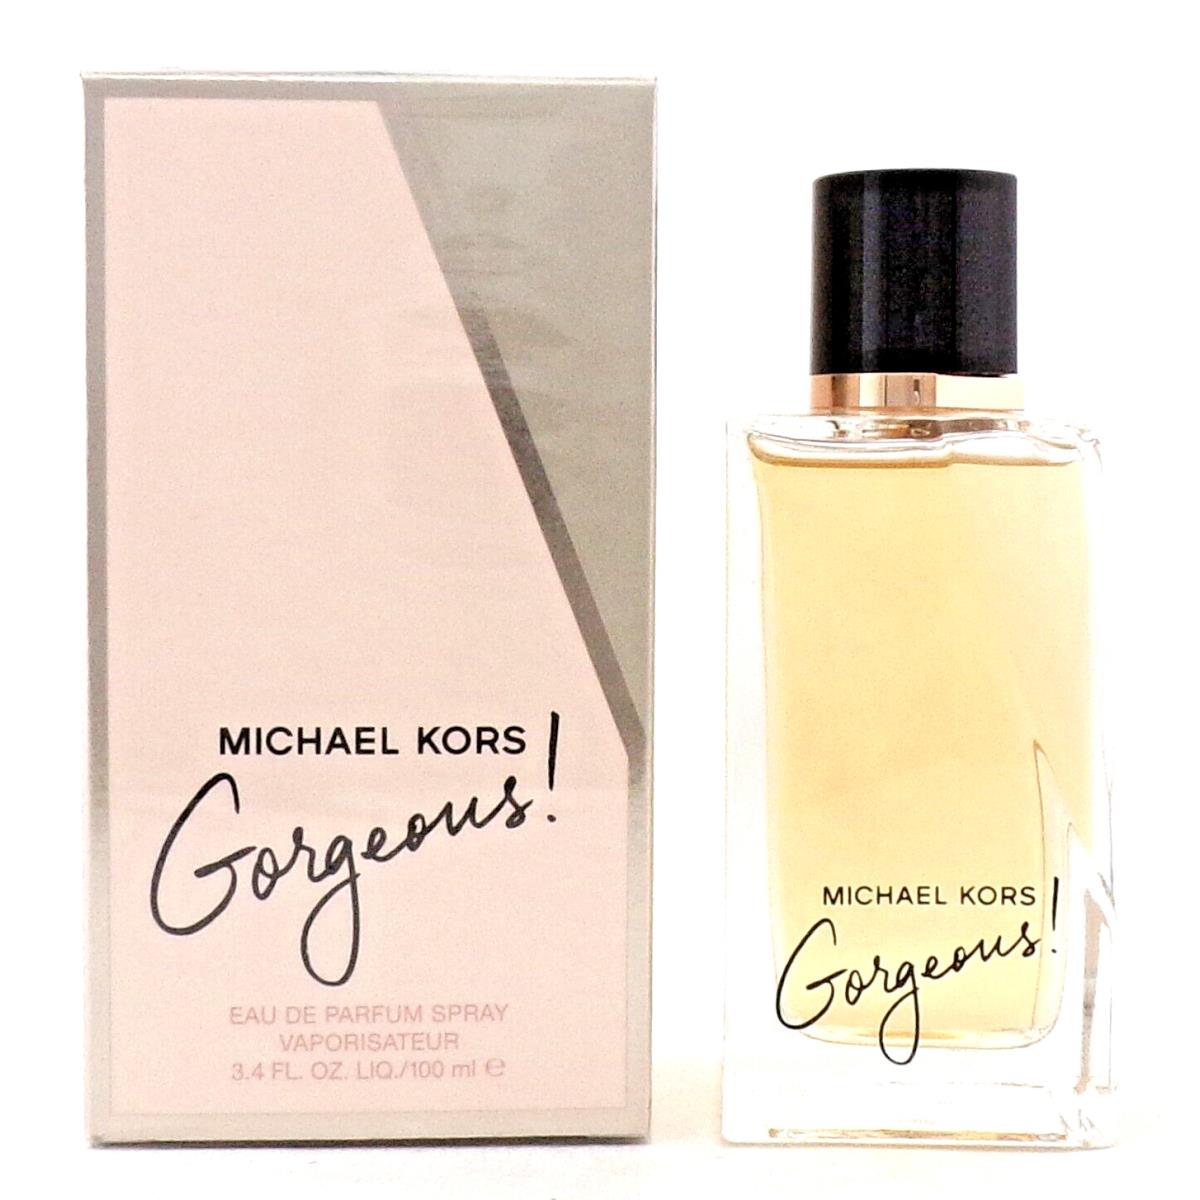 Michael Kors Gorgeous 3.4 Oz/ 100 ml Eau de Parfum Spray For Women